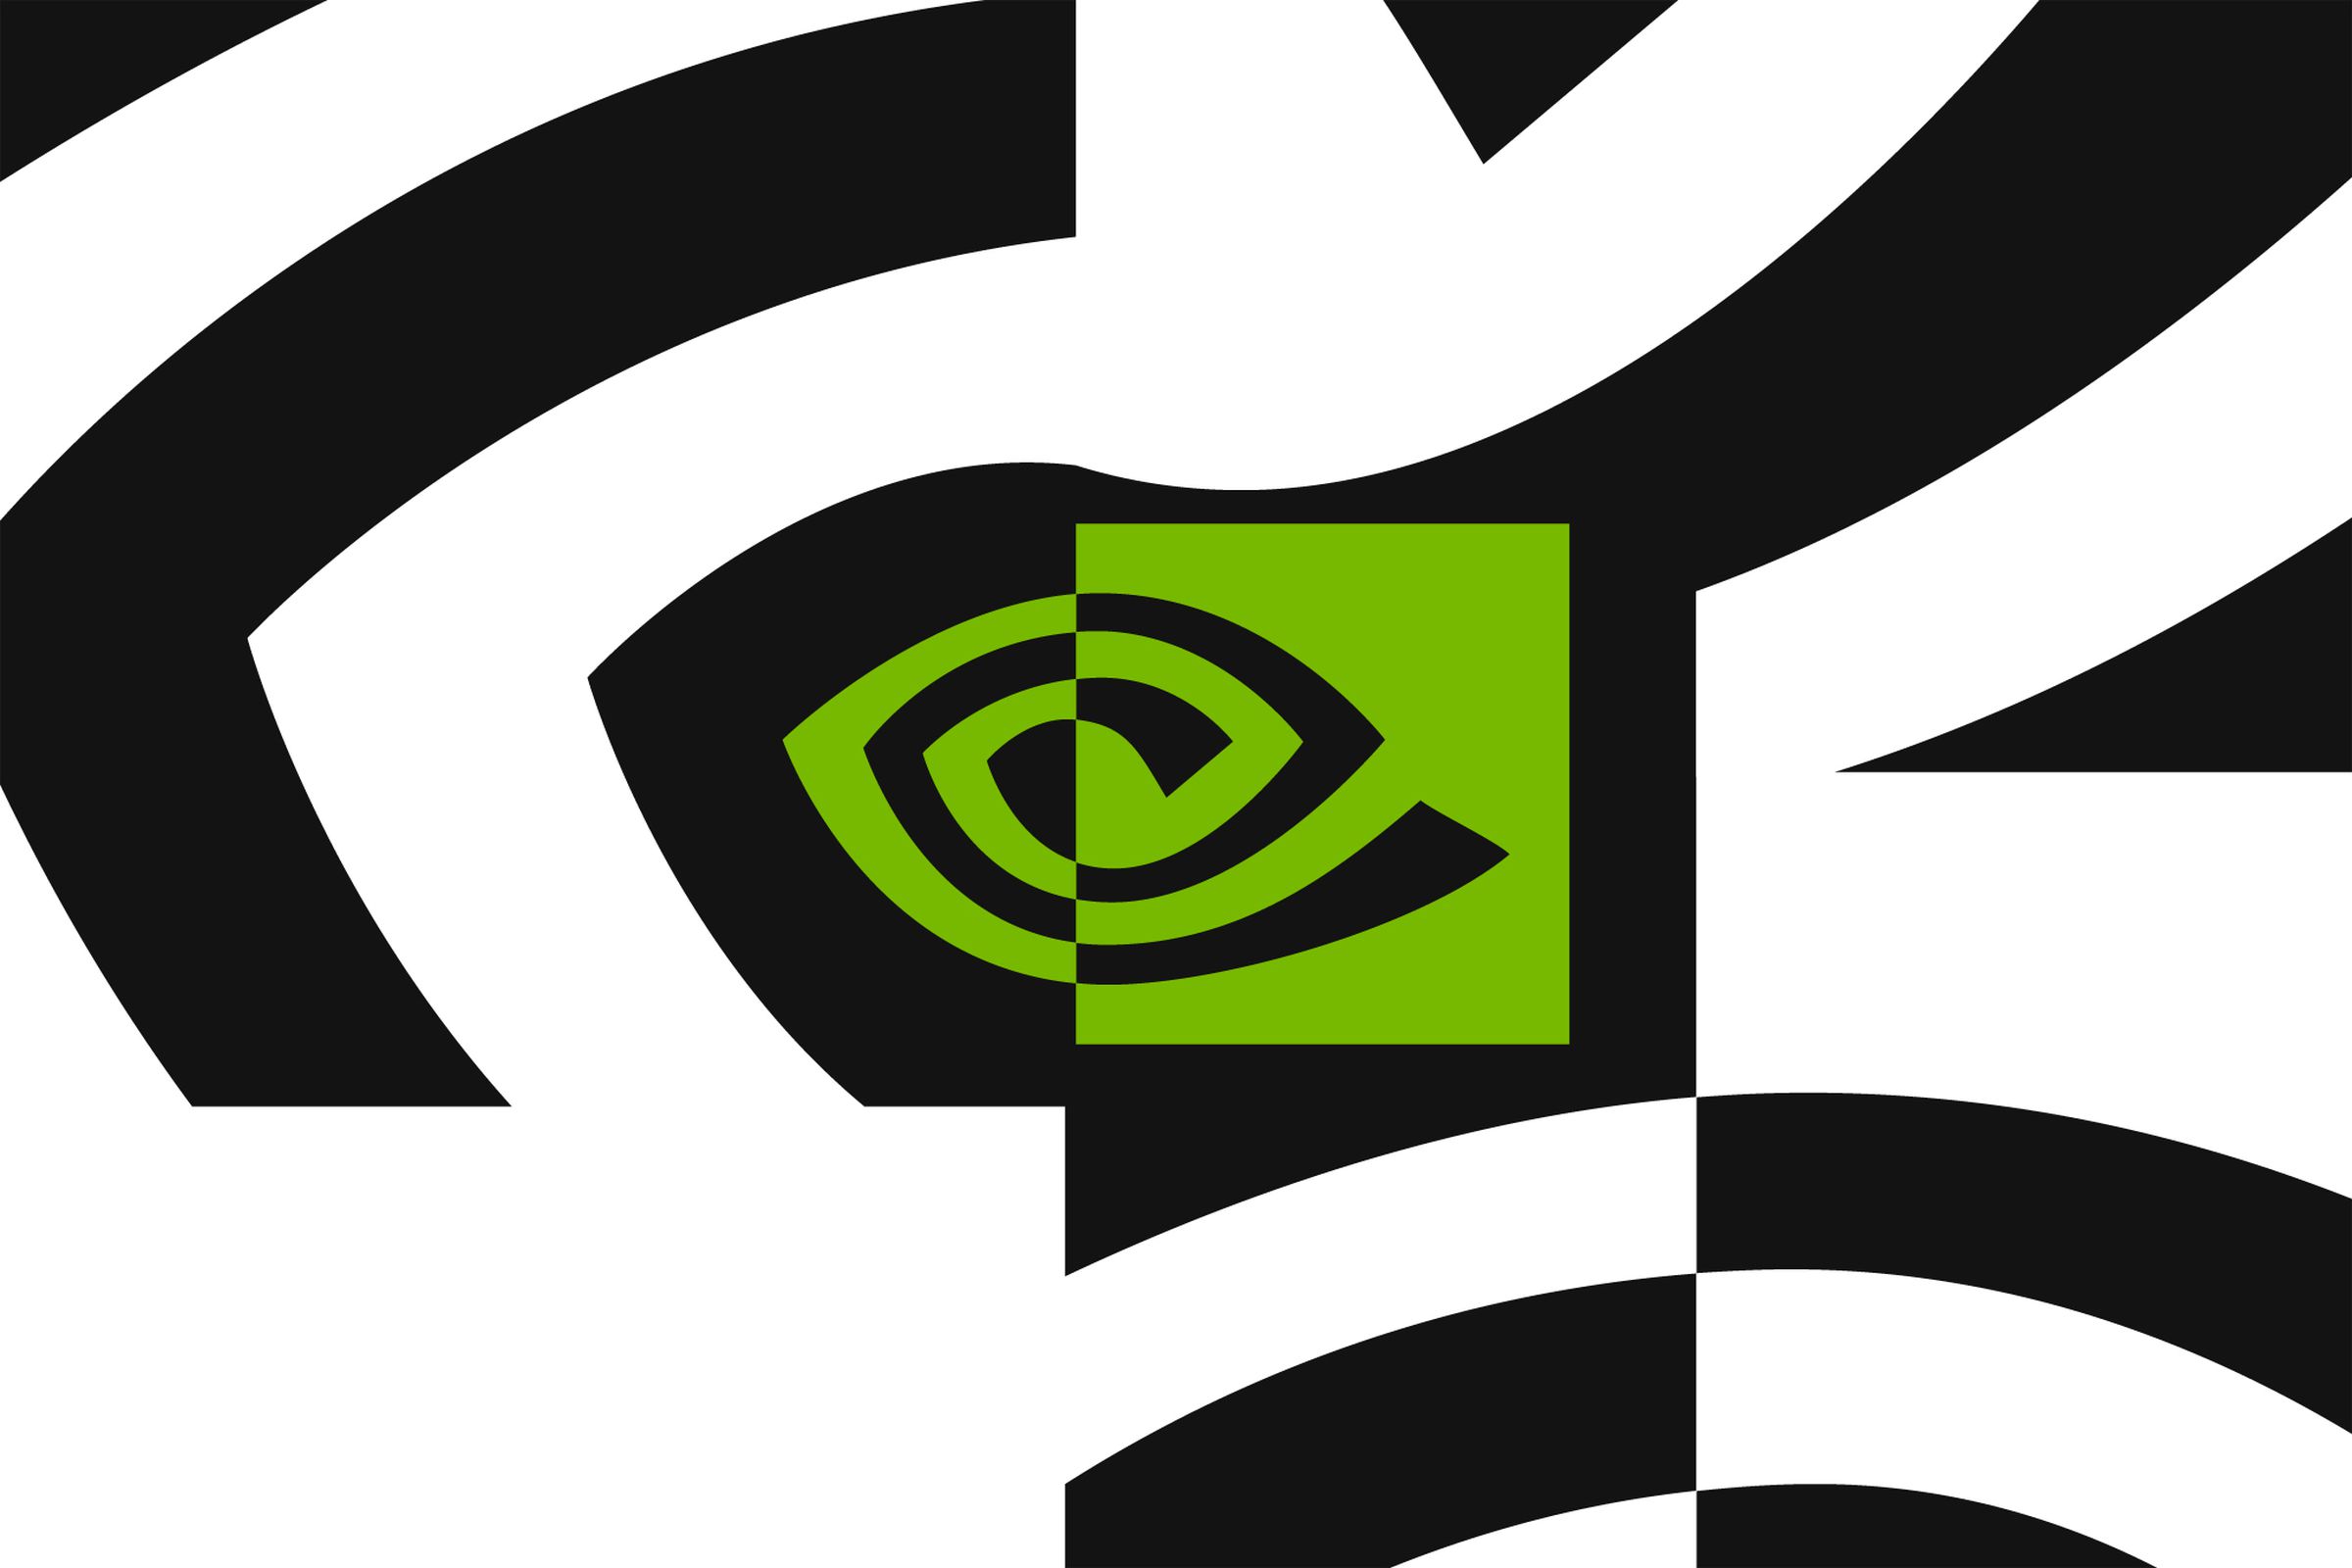 Nvidia’s logo.